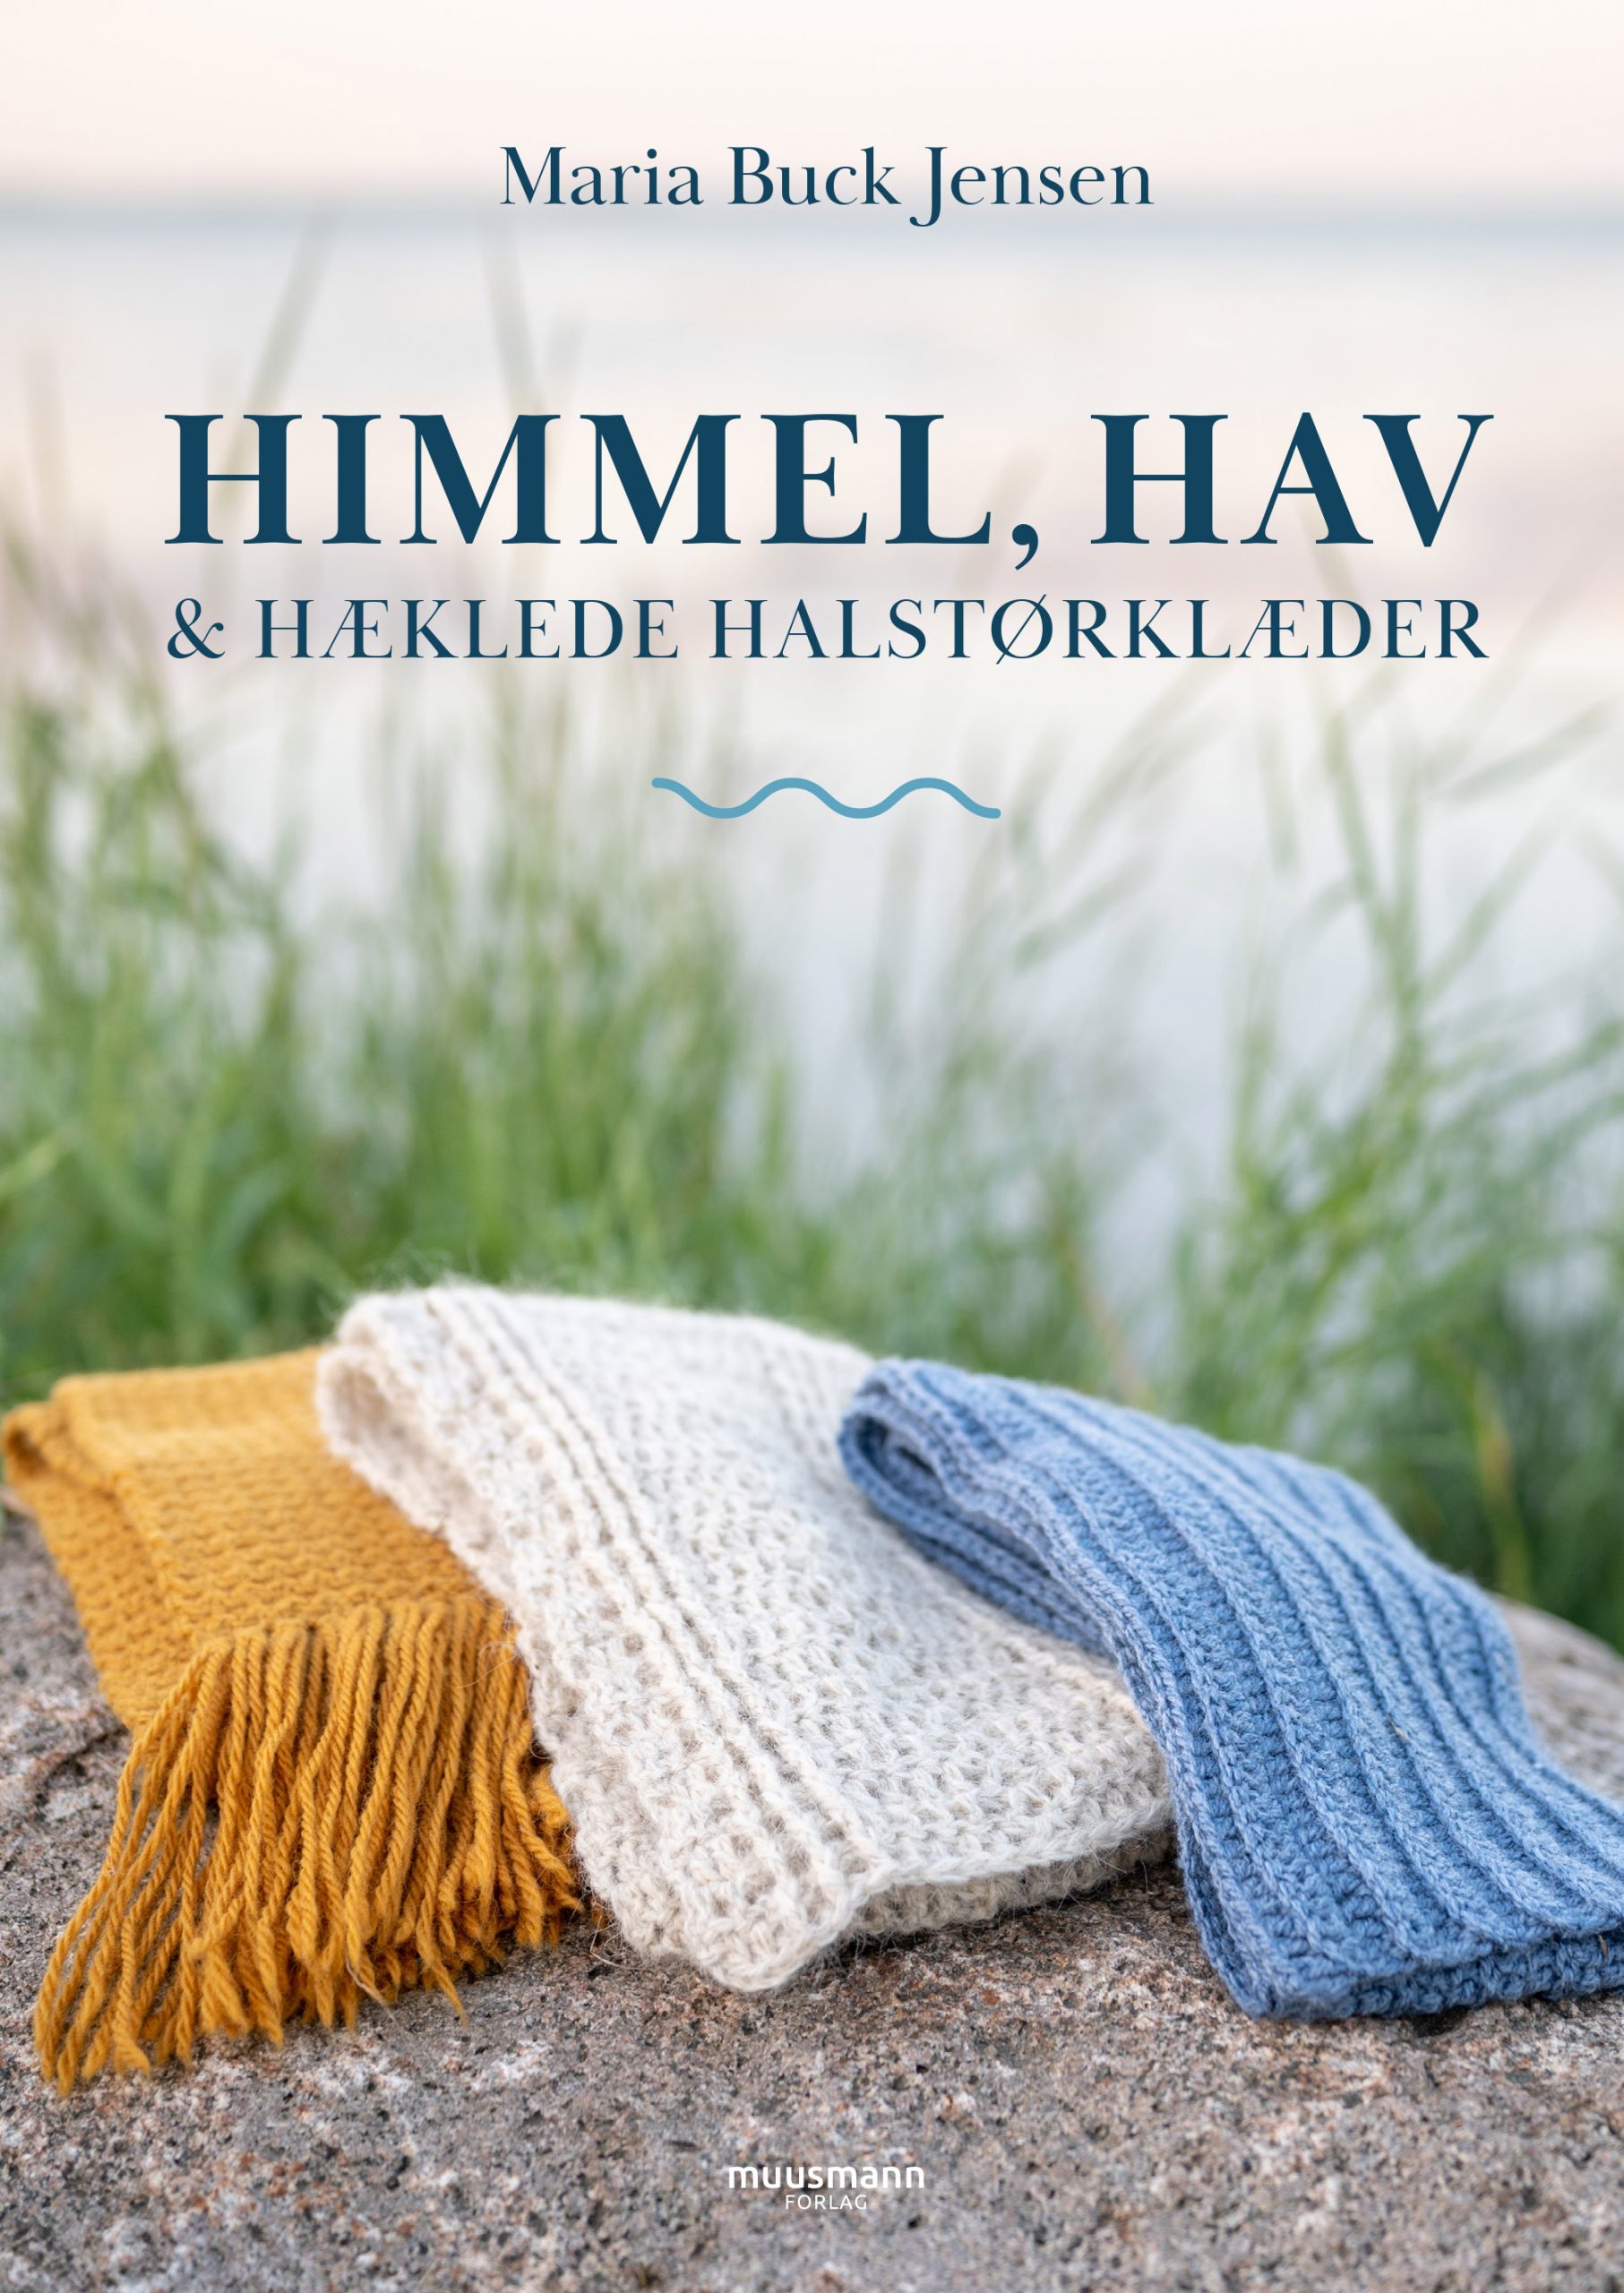 Himmel, hav og hæklede halstørklæder af Maria Buck Jensen, Muusmann Forlag